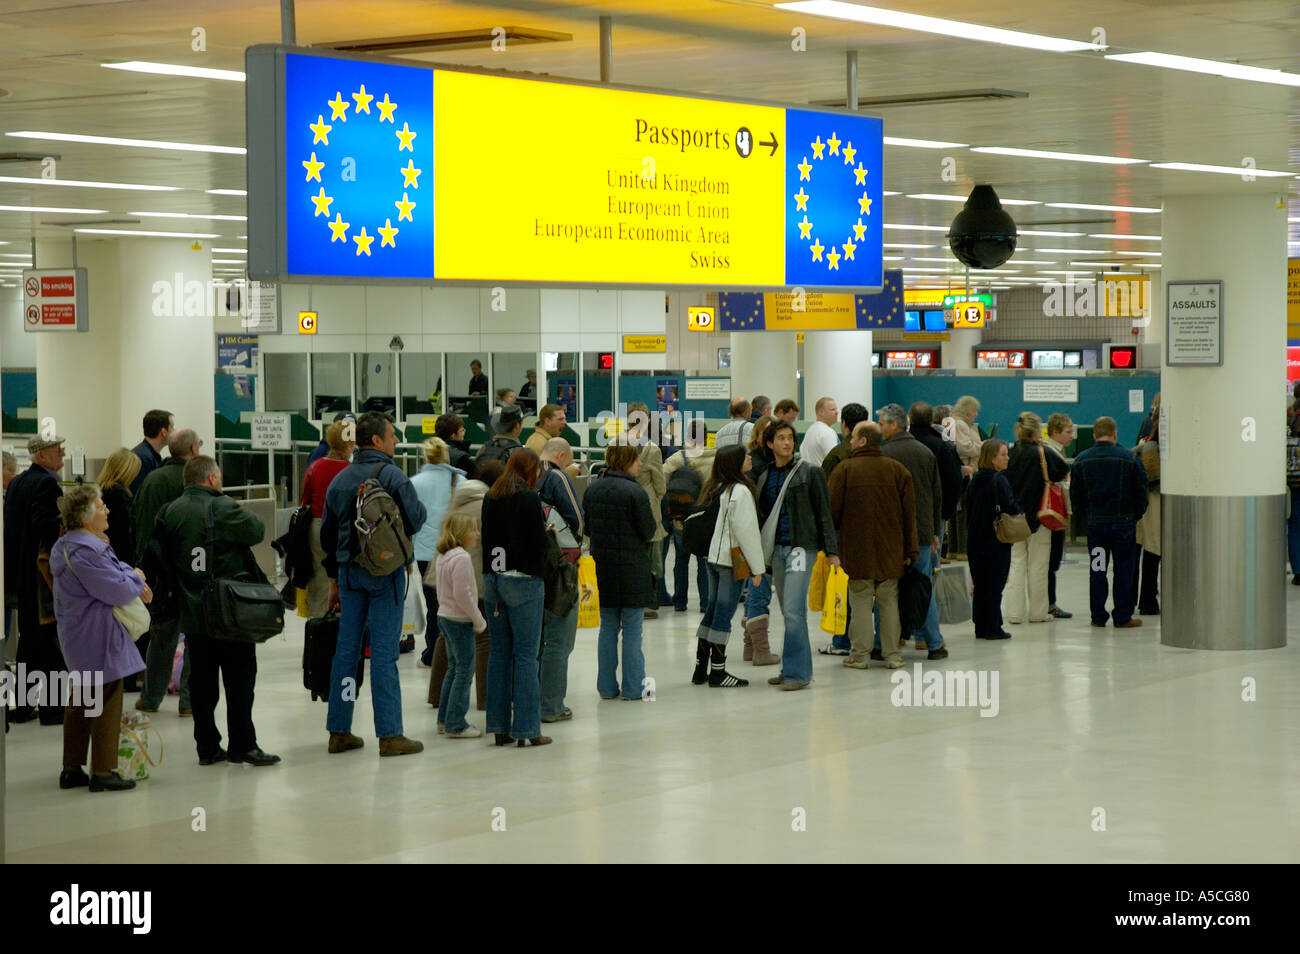 Les gens dans la file d'attente pour les détenteurs de passeports européens dans un aéroport britannique Banque D'Images